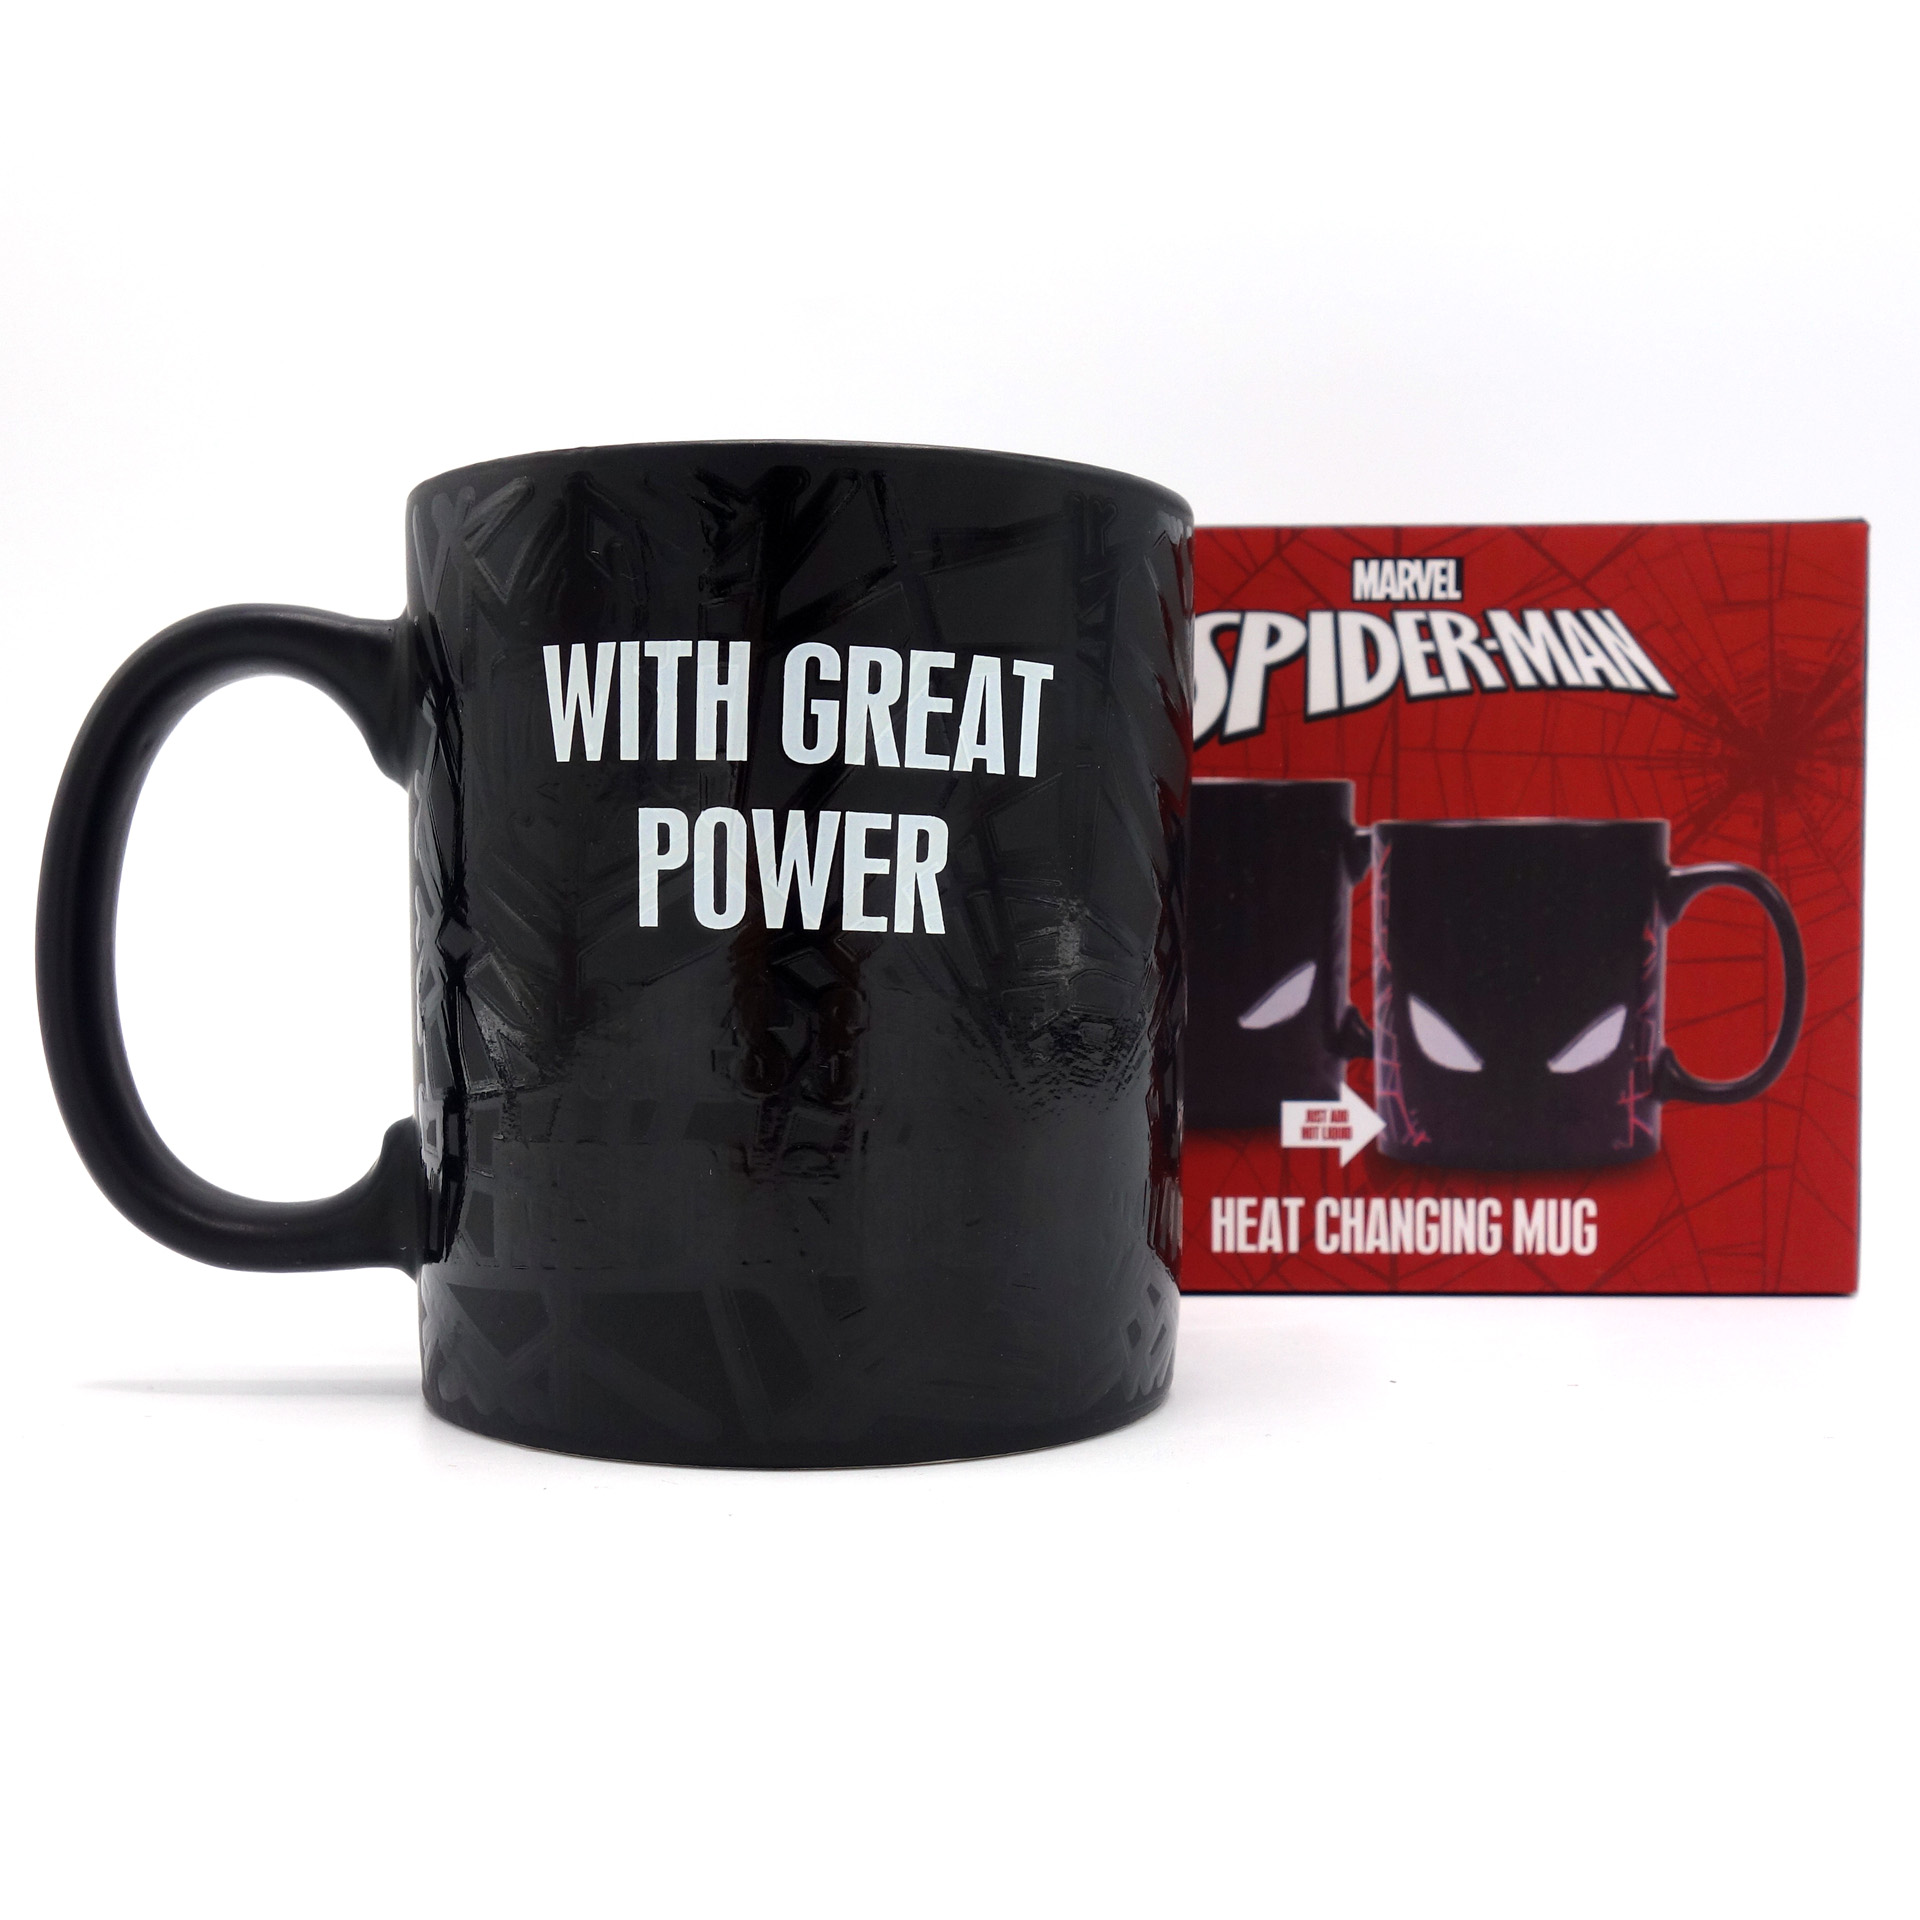 Spiderman Zaubertasse With Great Power Heat Changing Mug